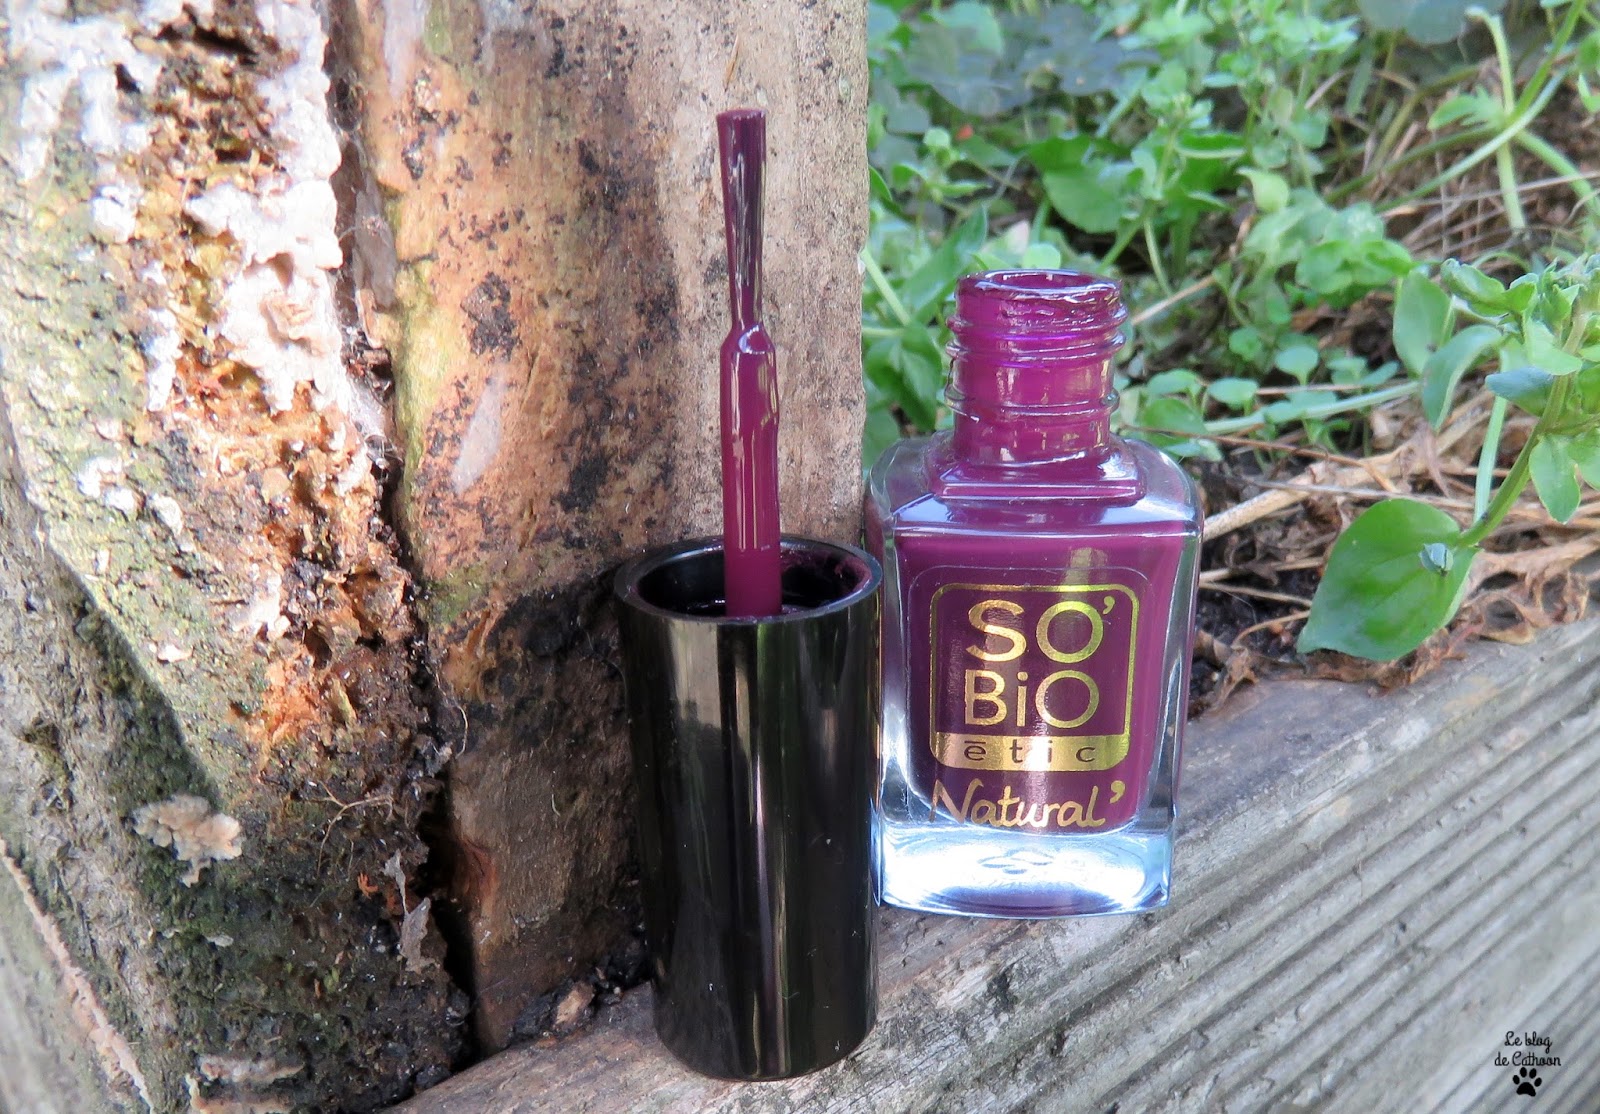 10 Prune Noire - Vernis à Ongles - So'Bio étic Natural'